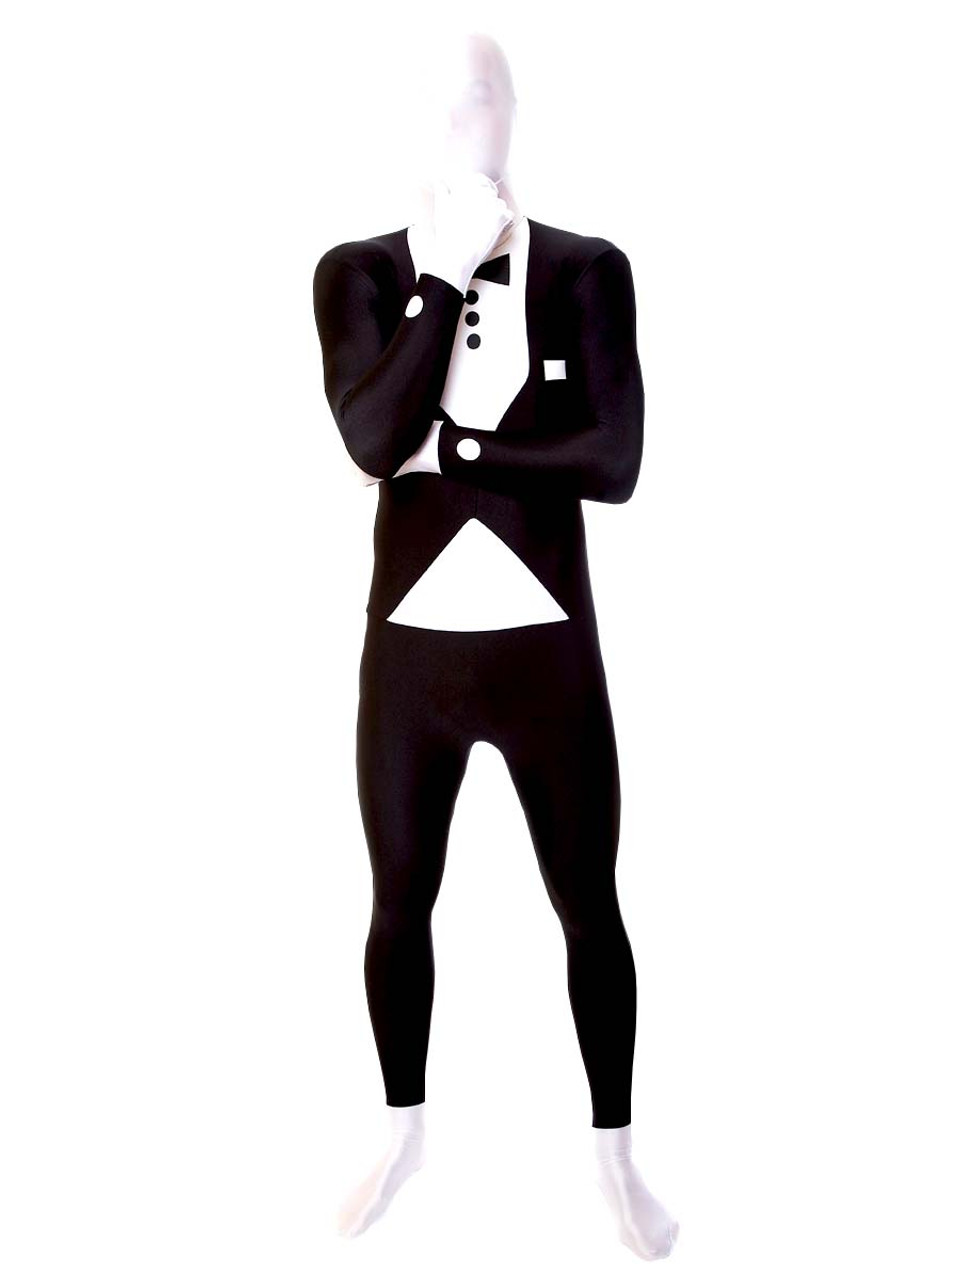 Tuxedo Print Morphsuit Full Body Costume - The Costume Shoppe